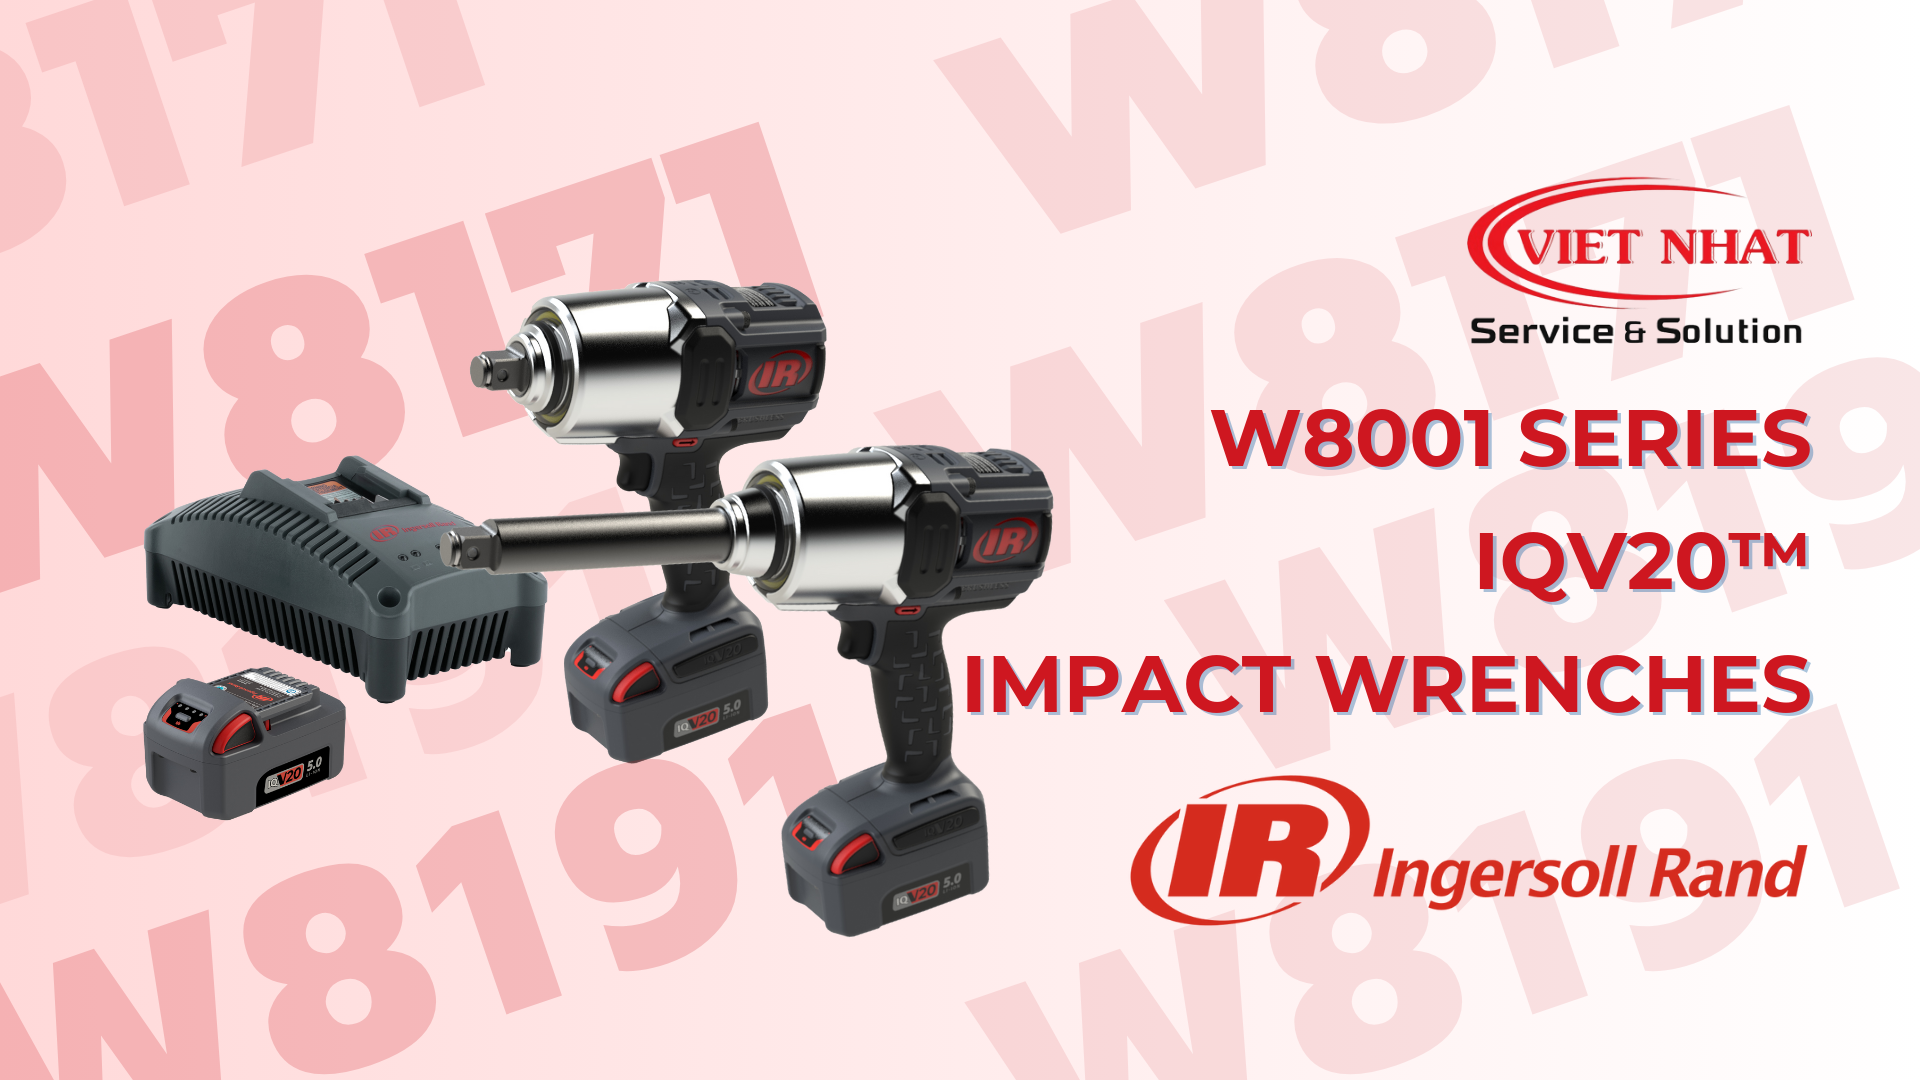 W8001 Series IQV20™ Impact Wrenches: Sức Mạnh và Tiện Lợi Cho Công Việc Sửa Chữa và Bảo Trì